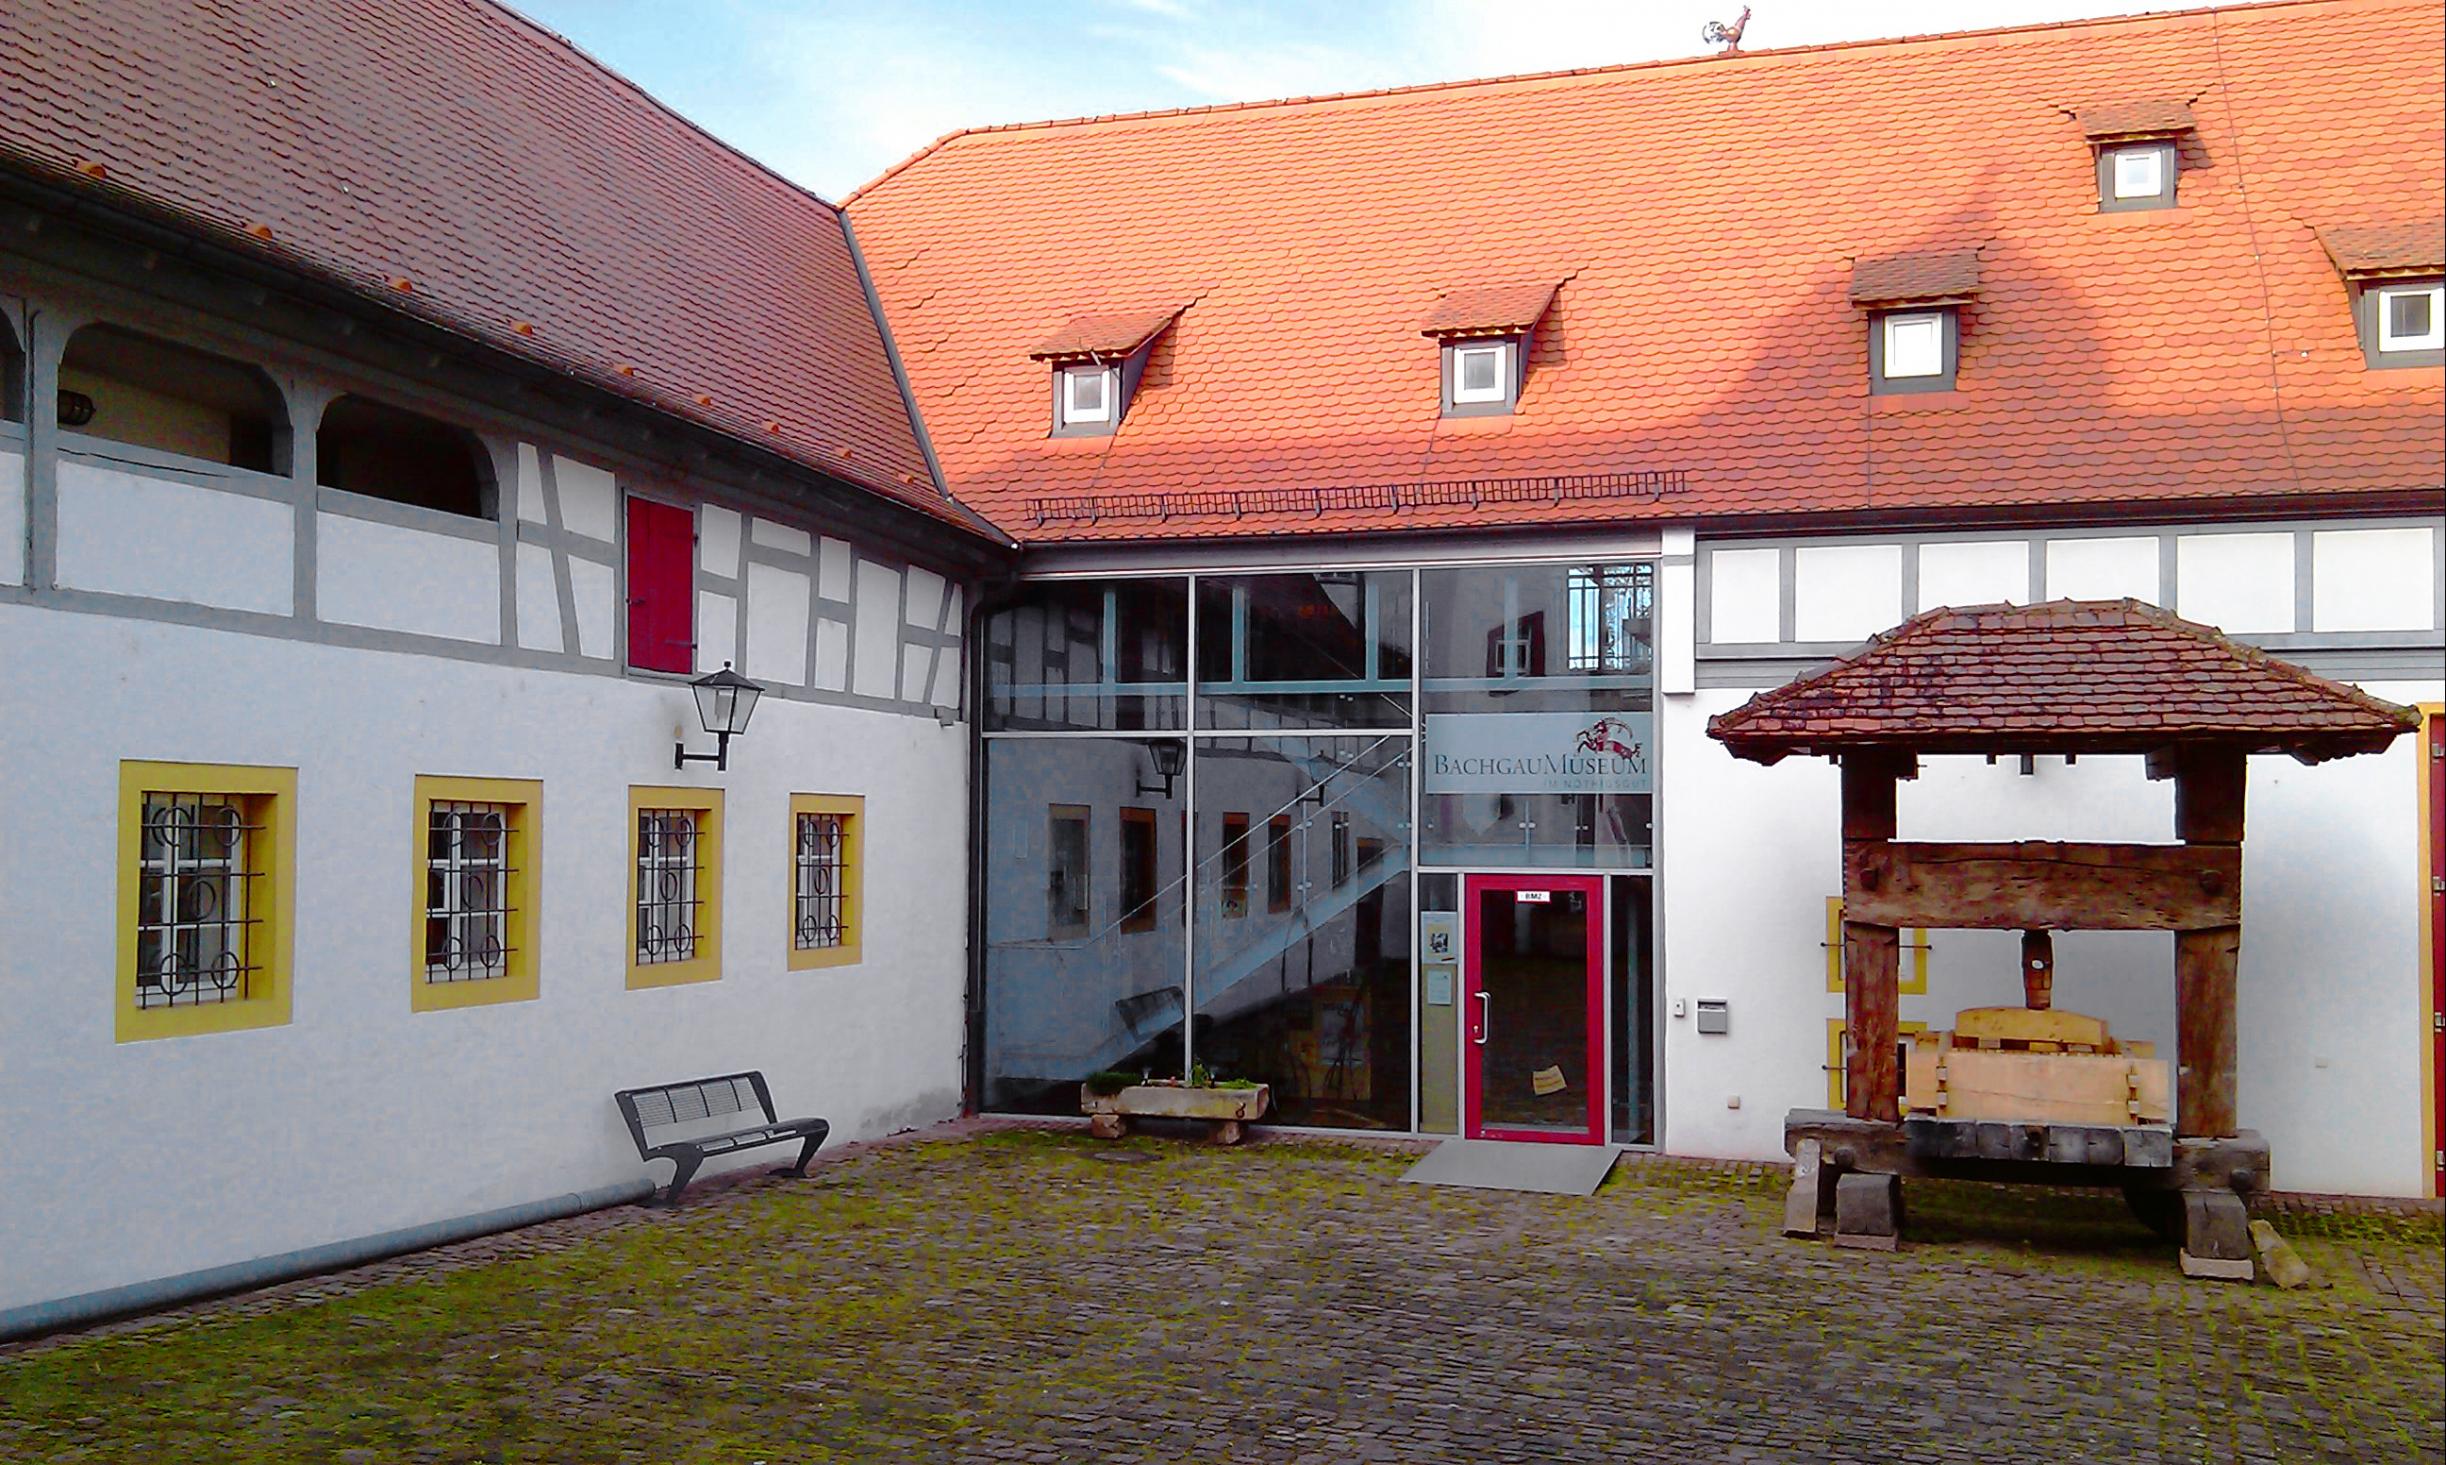 Der Eingang ins Bachgaumuseum wird von einer Weinpresse flankiert. © Michael Abb